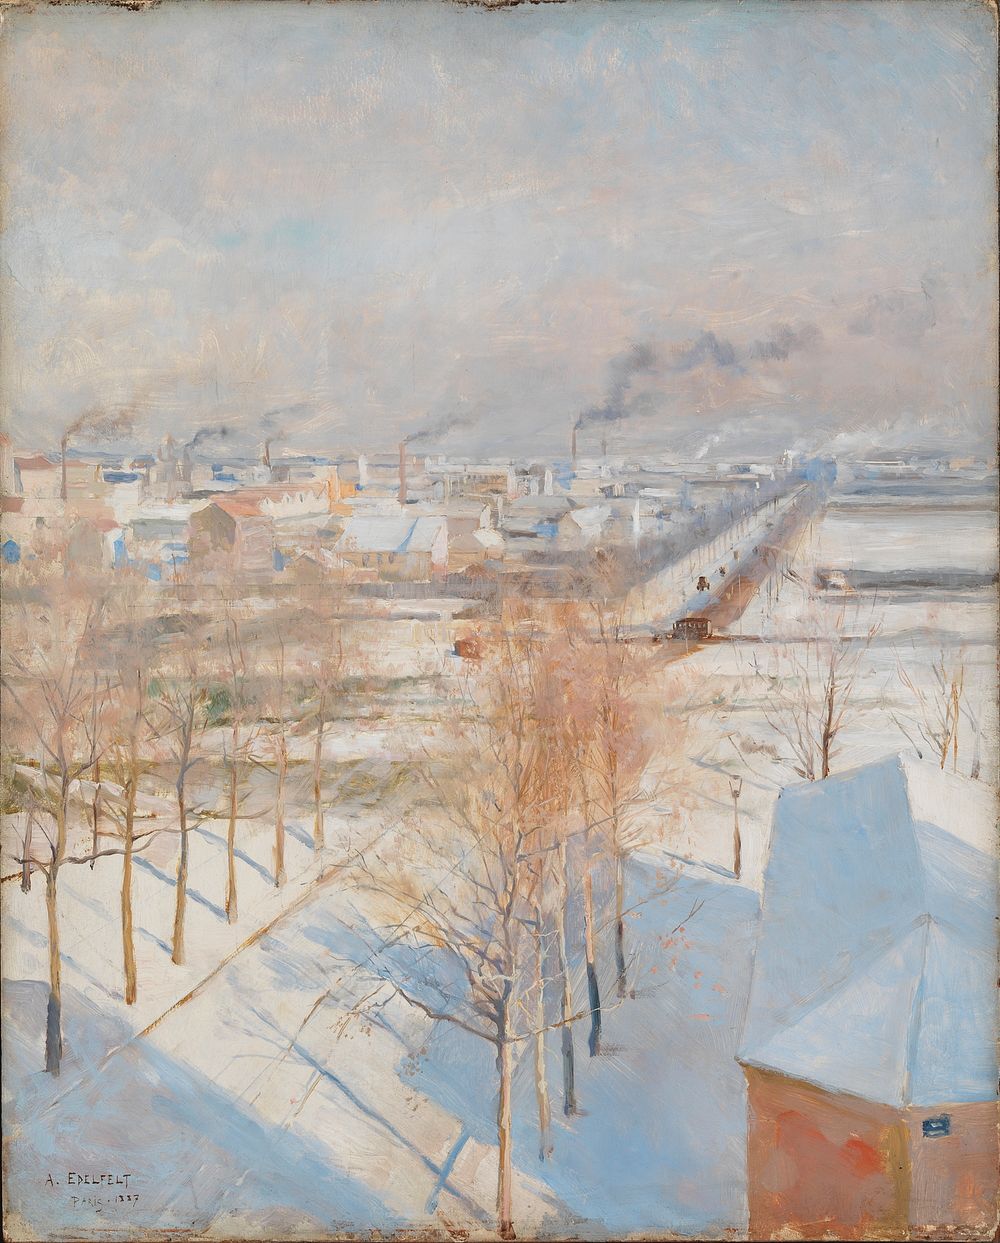 Paris in snow, 1887, by Albert Edelfelt